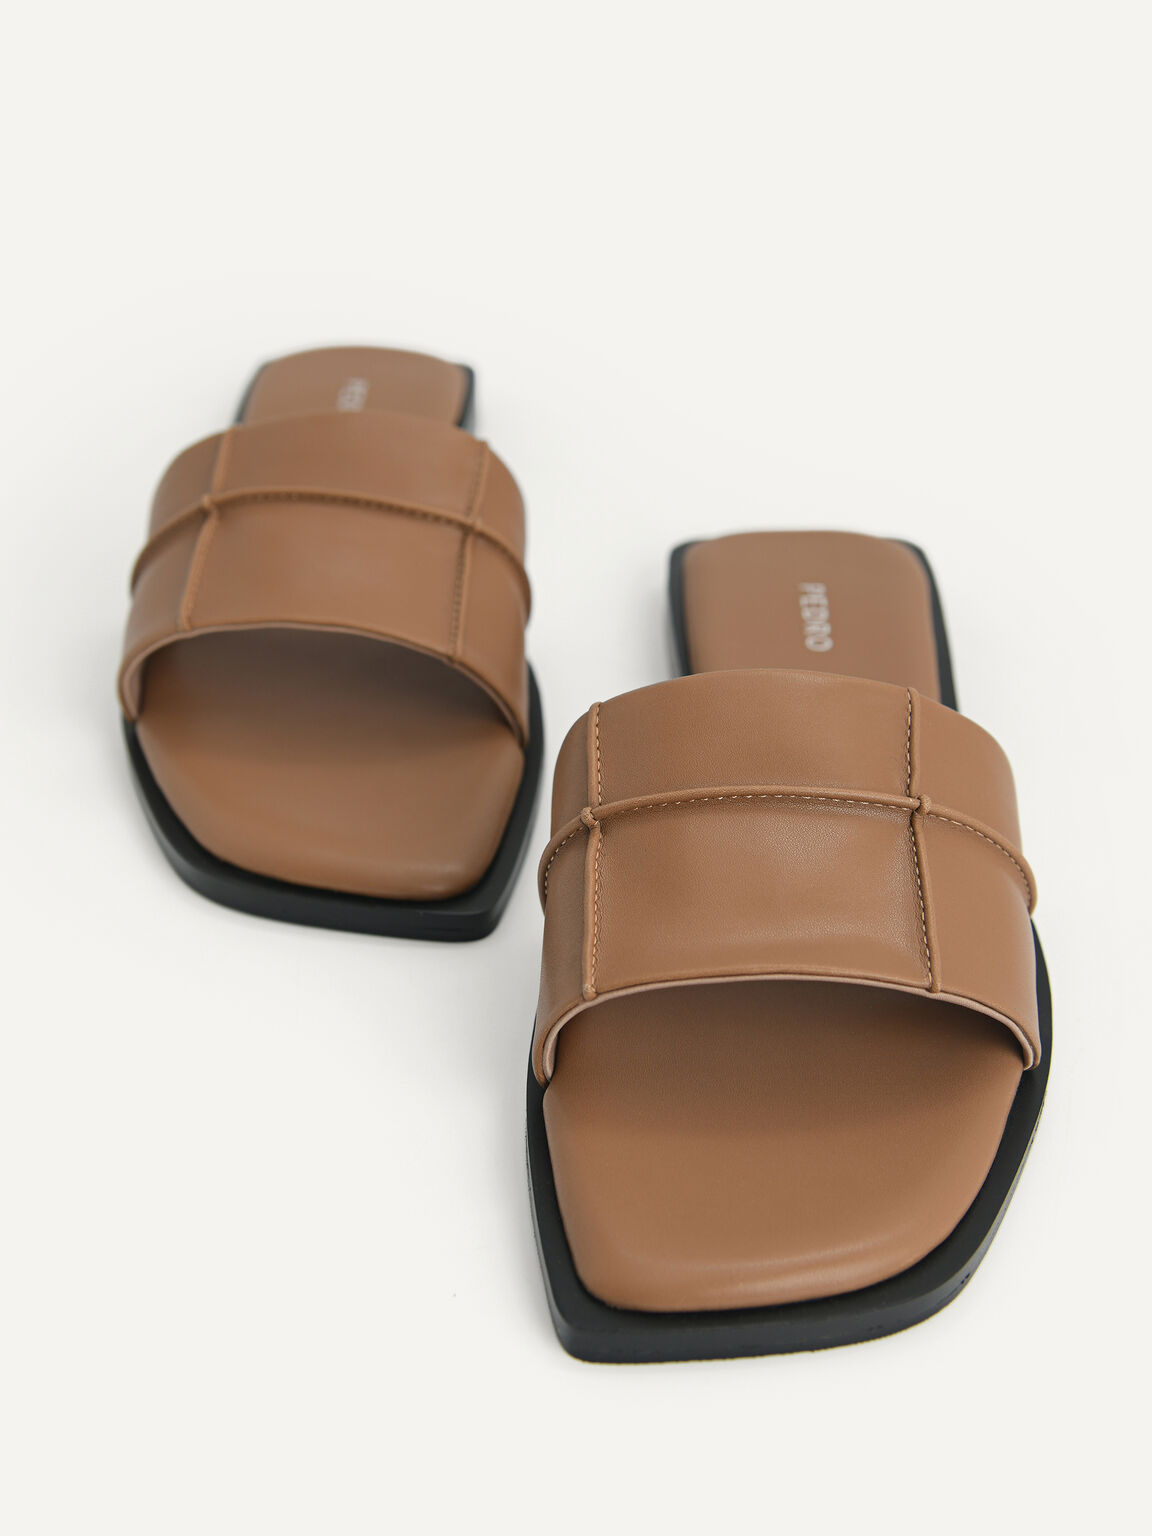 Slide Sandals, Brown, hi-res